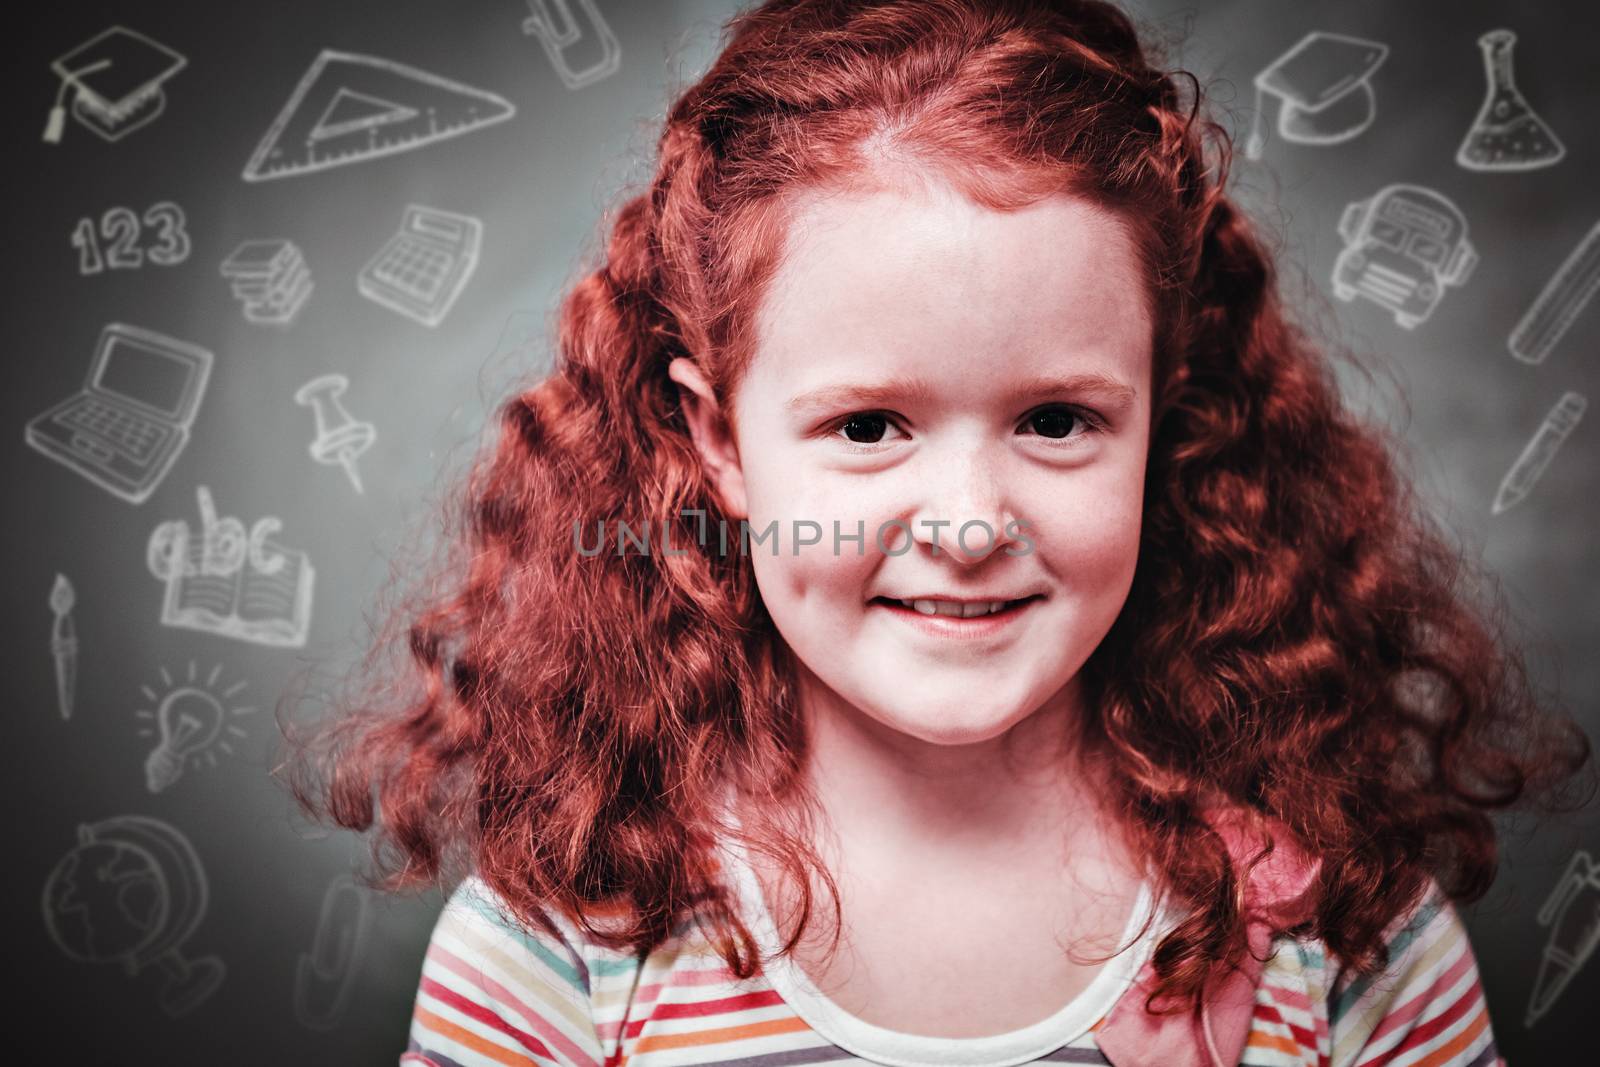 Education doodles against portrait of cute little girl